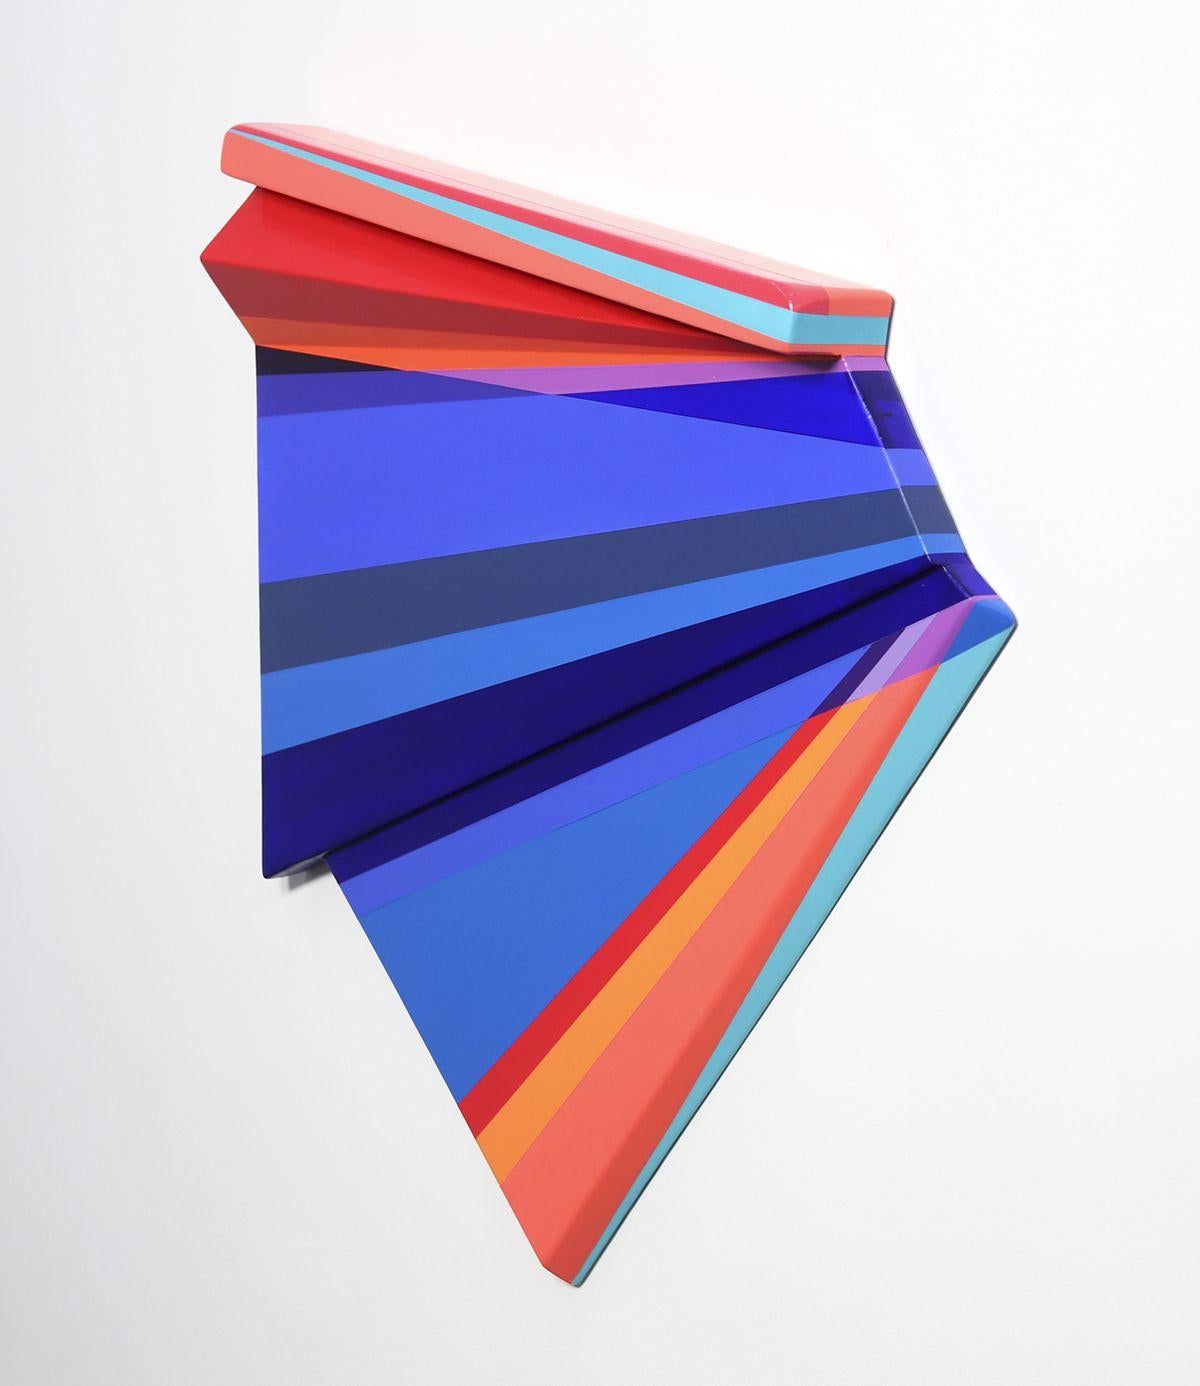 Overflow - Abstract Geometric Sculpture by Rachel Hellmann